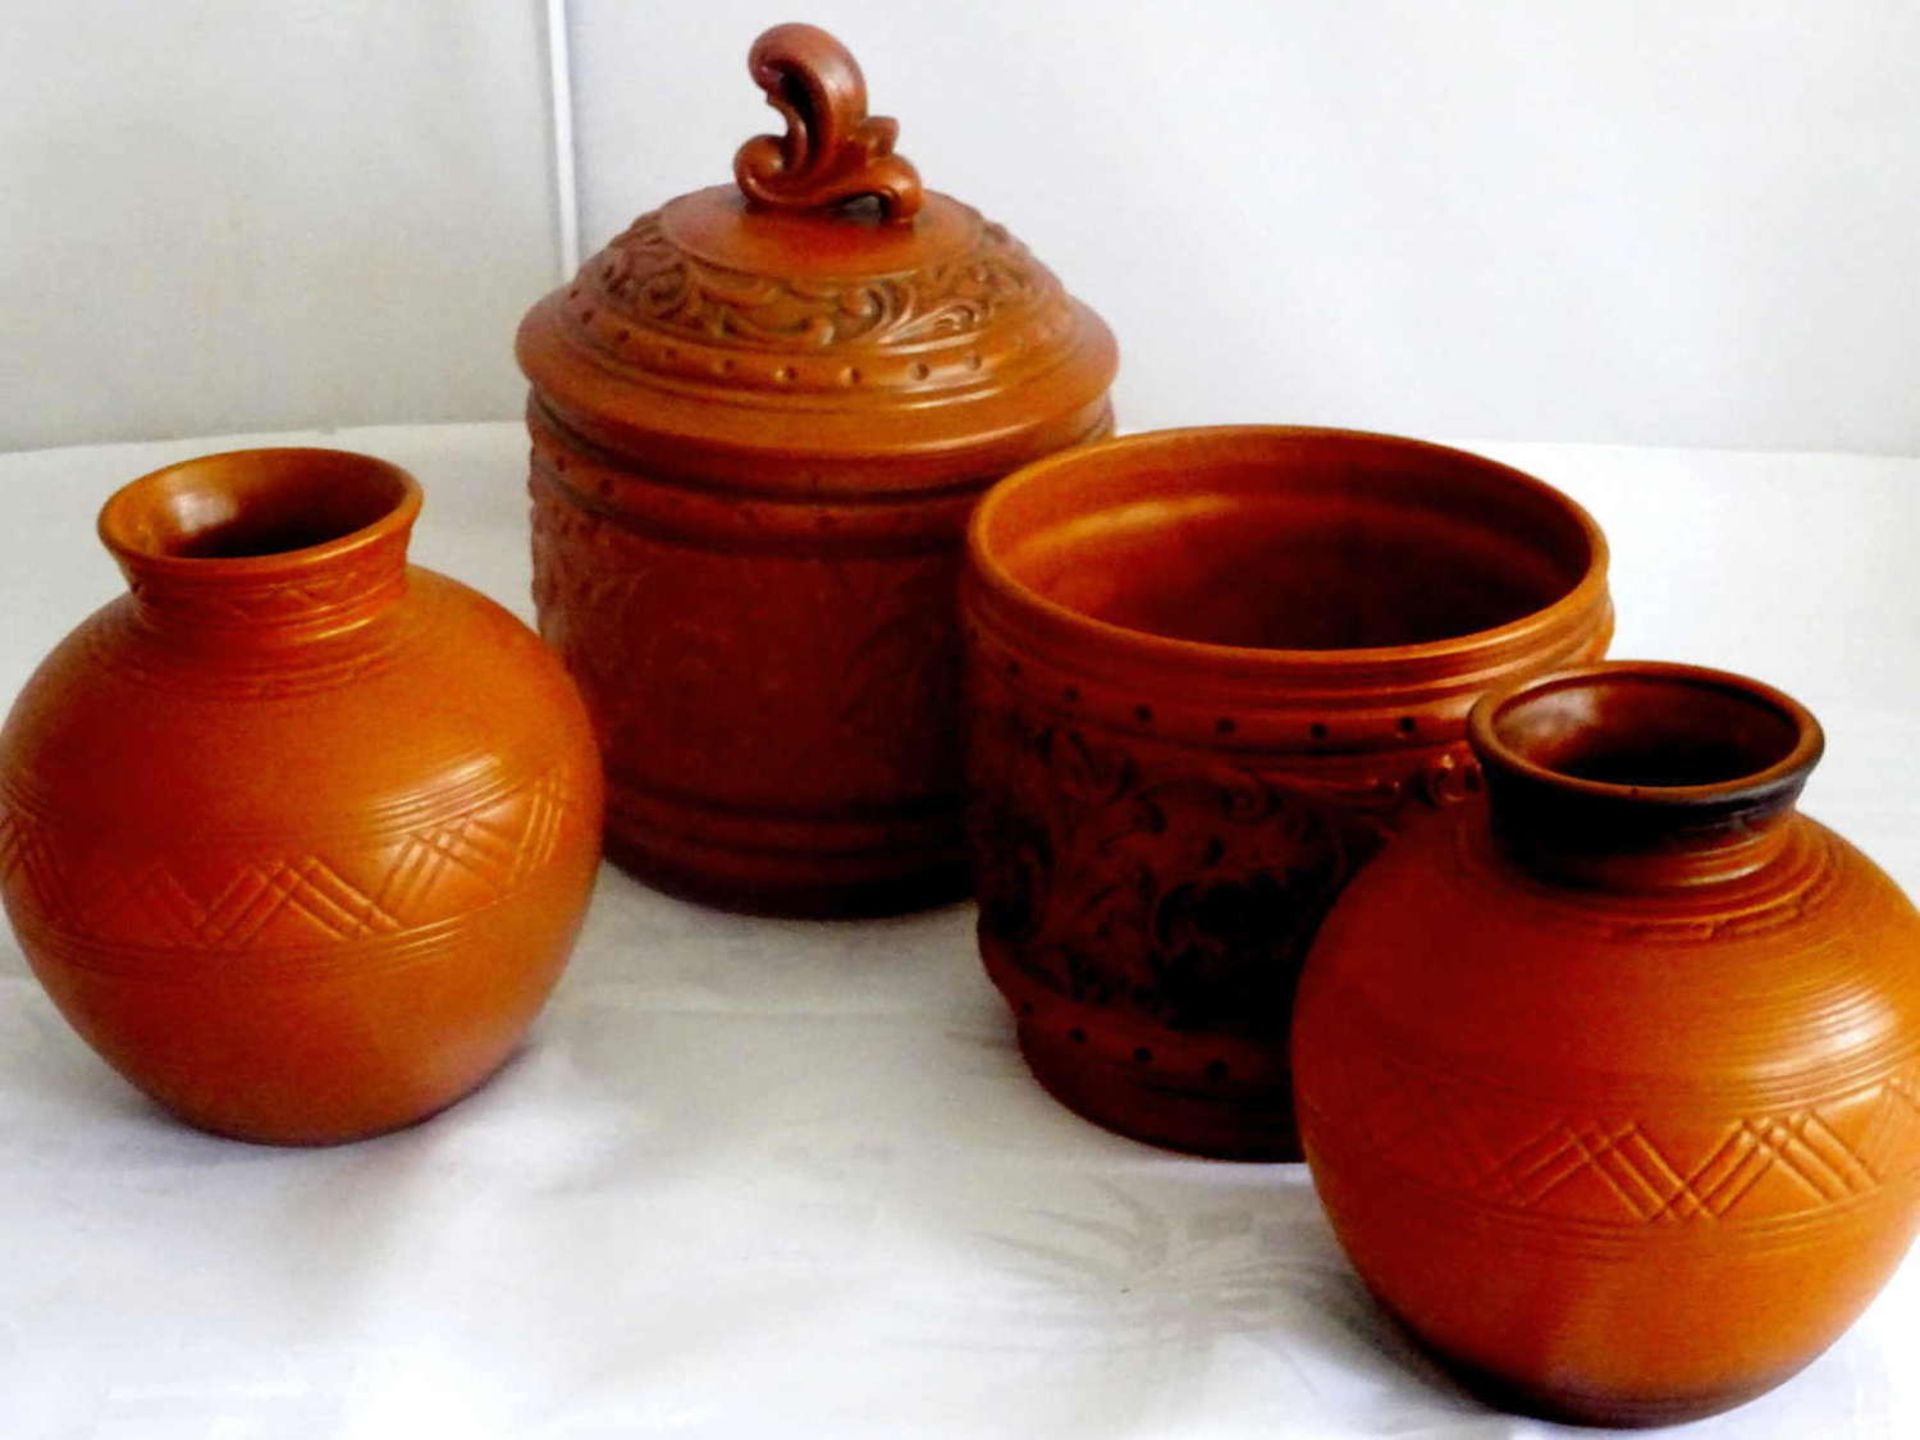 4 Keramikvasen "Grünstadt", verschiedene Ausführungen und Größen. 1x mit Deckel4 ceramic vases "